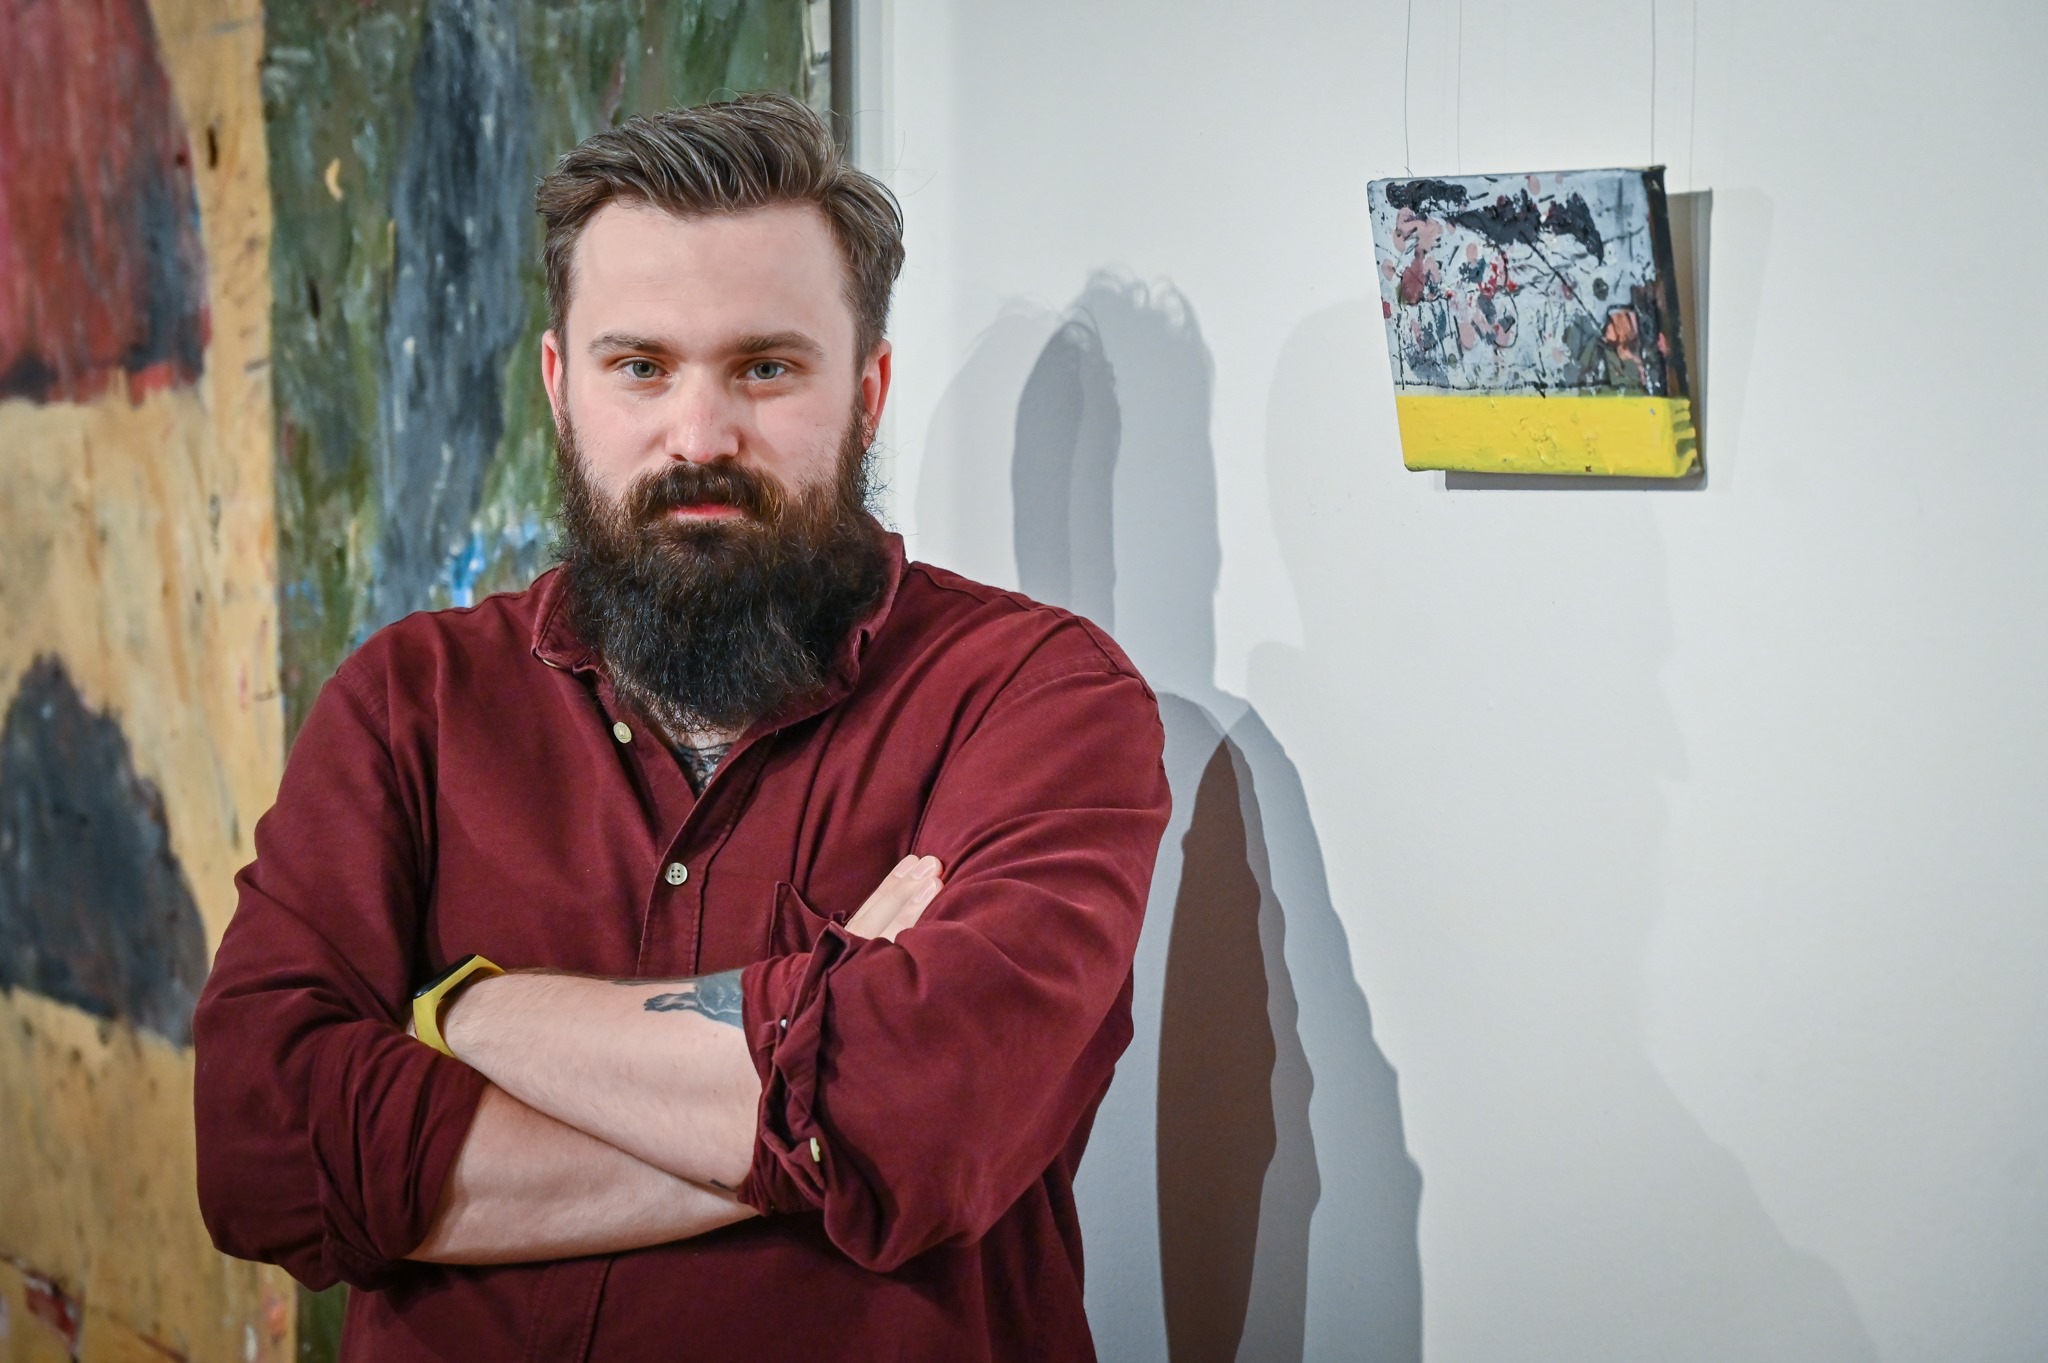 Malarstwo Mateusza Pawełczyka zagości w Ośrodku Promocji Kultury "Gaude Mater" 3